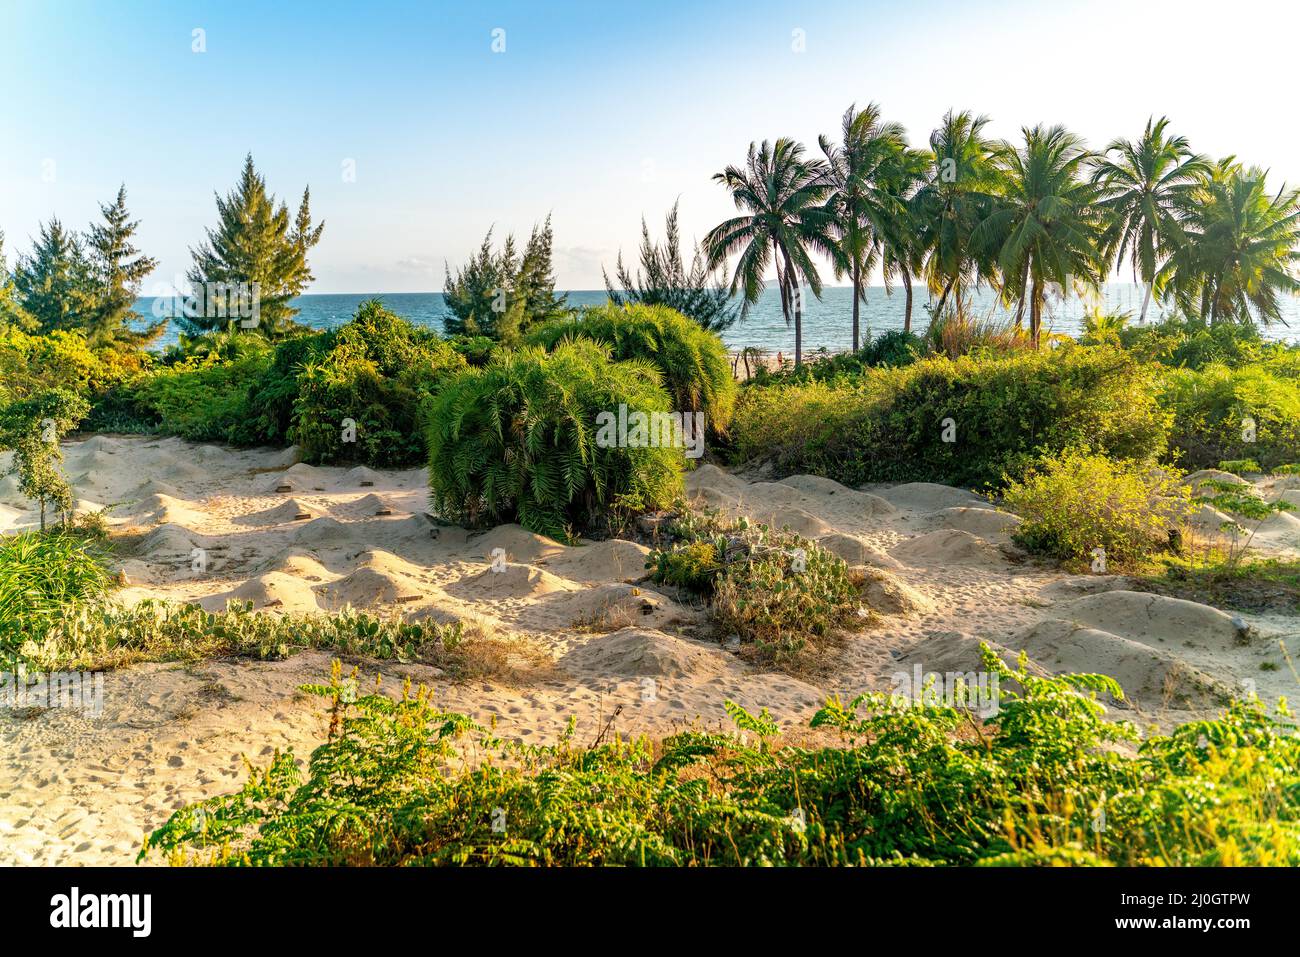 The amazing view of Sanya beach on Hainan, China Stock Photo